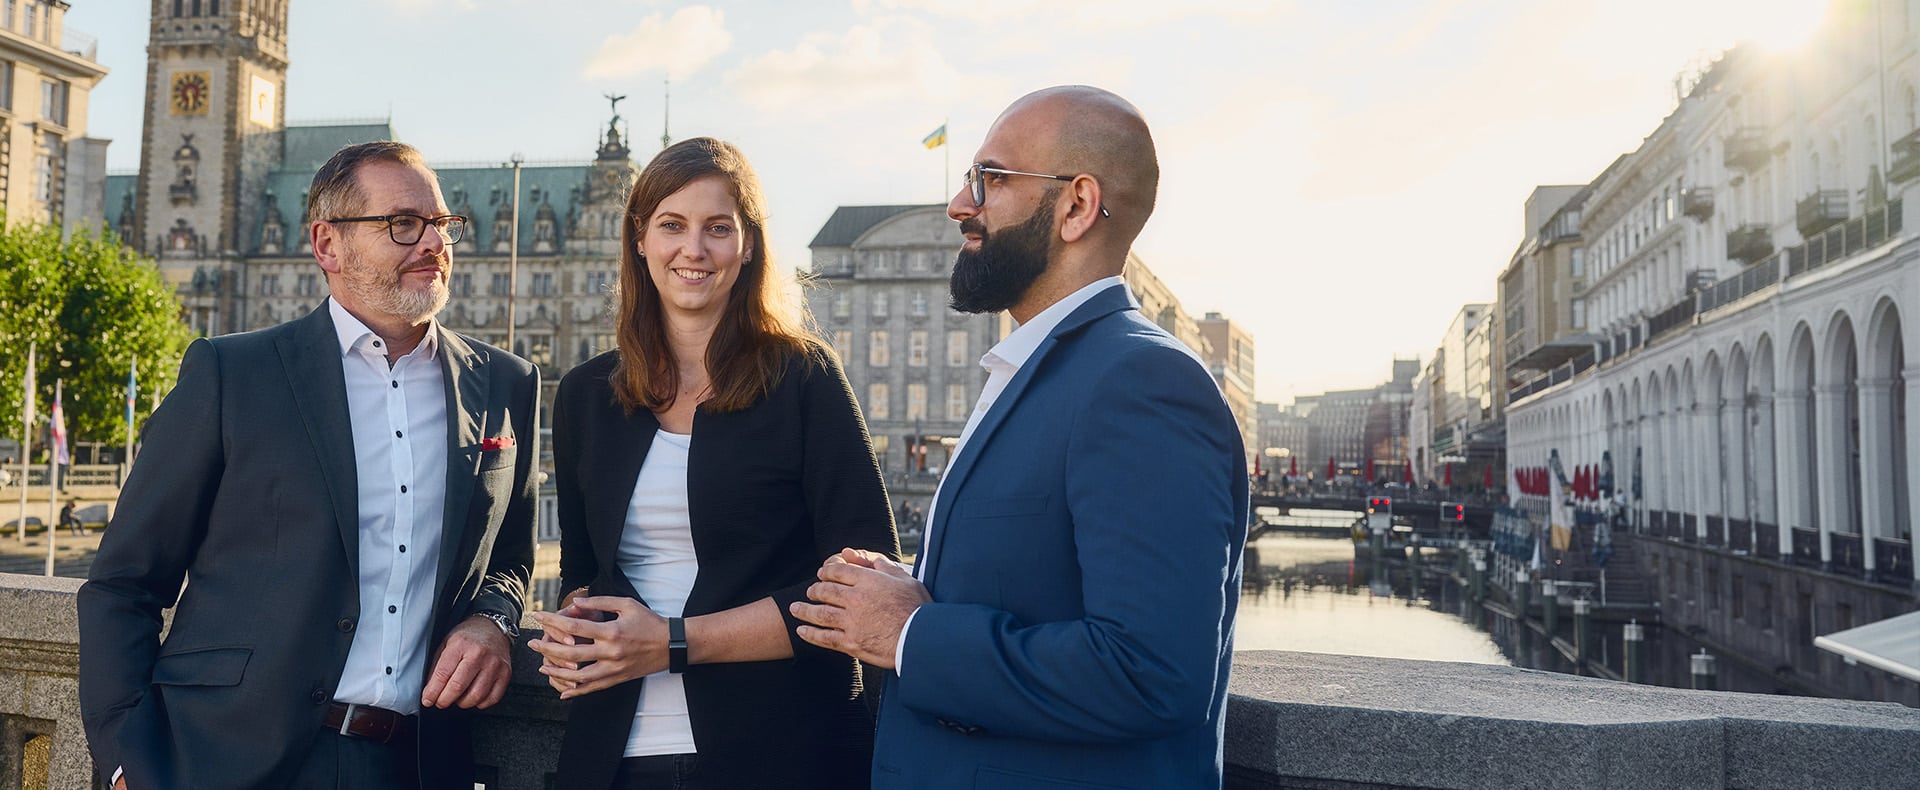 Zwei Männer und eine Frau stehen auf einer Brücke vor dem Hamburger Rathaus